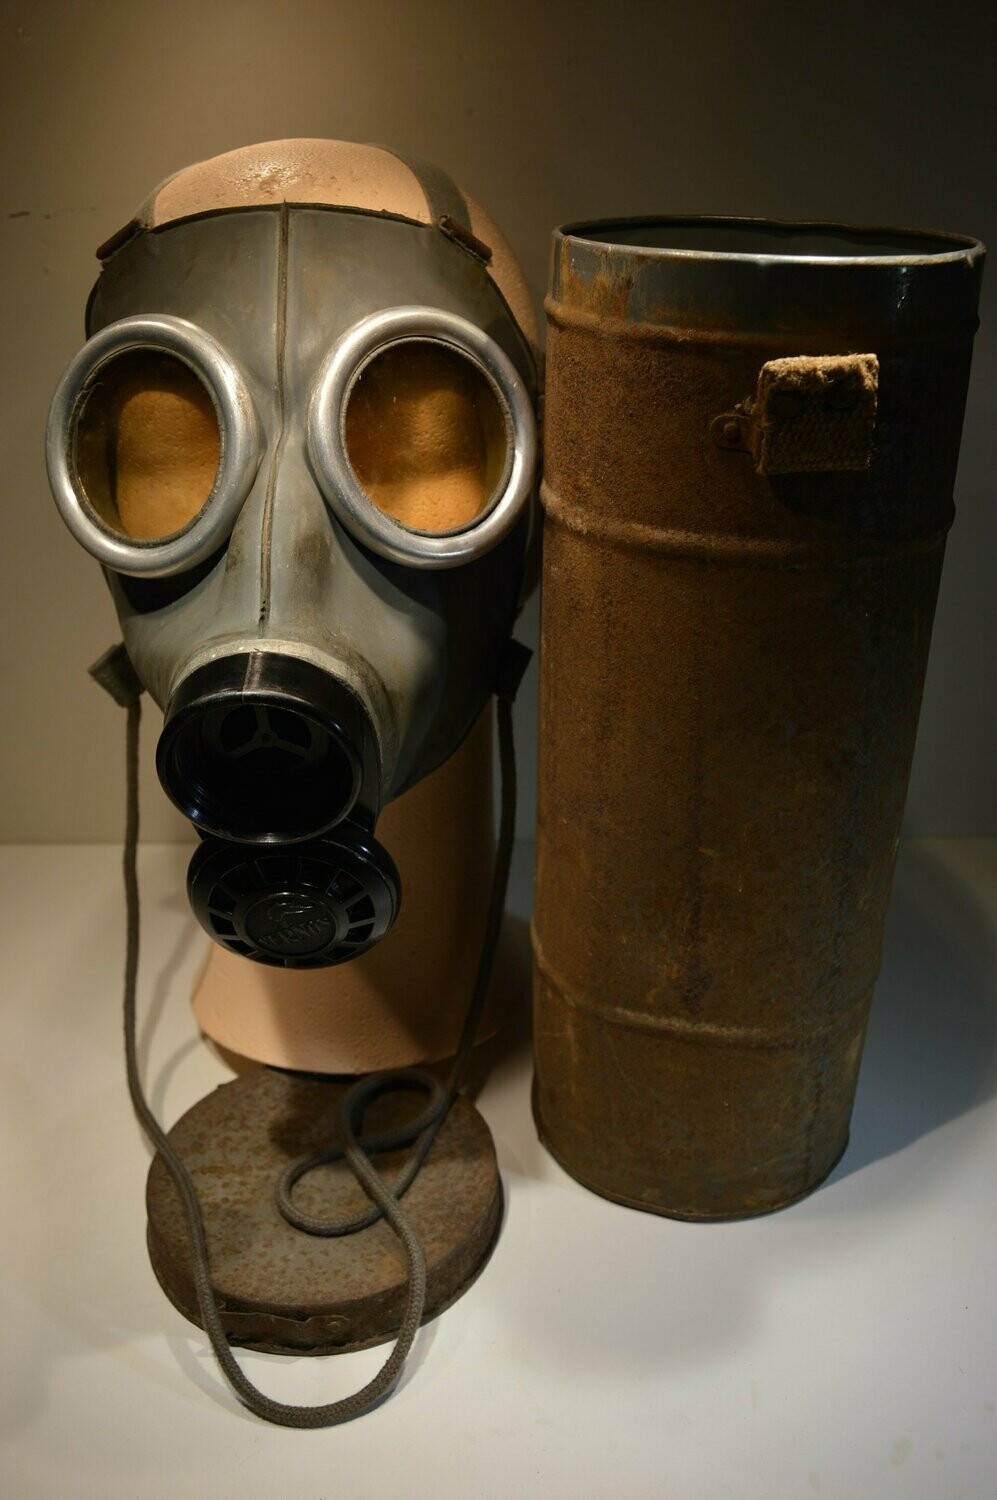 Masque à gaz défense passive VERNON - France WW2